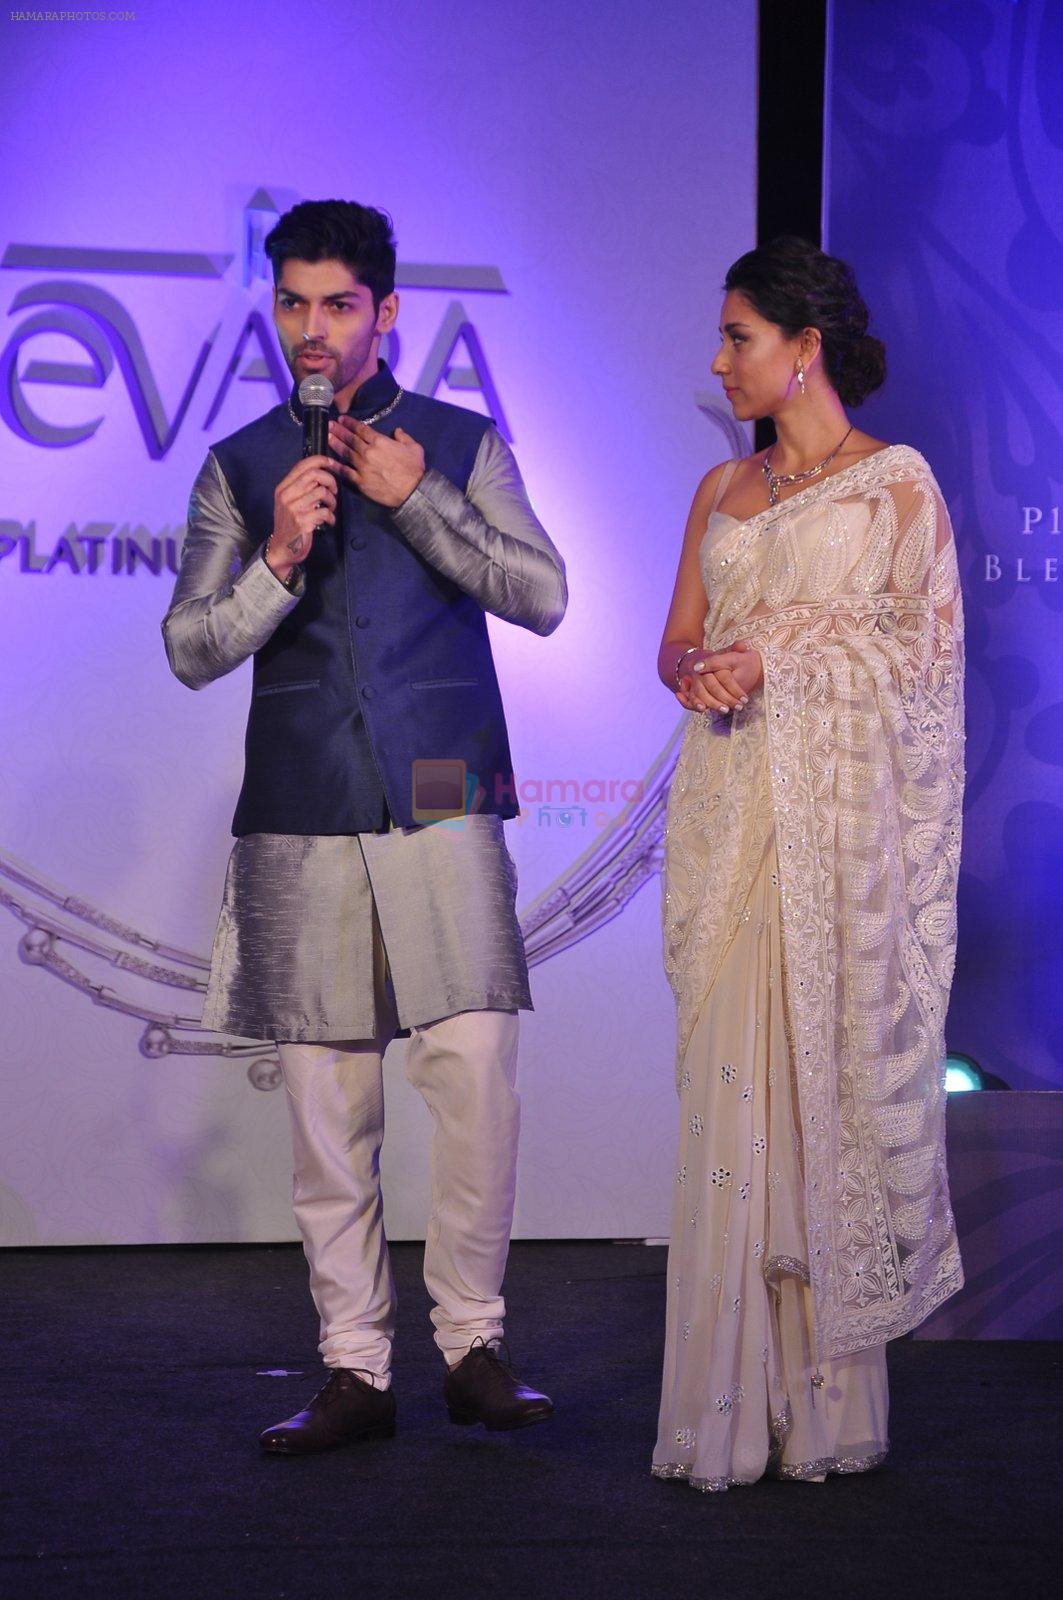 Amrita Puri unveils Evara collection by Platinum Guild India in Mumbai on 9th Dec 2014